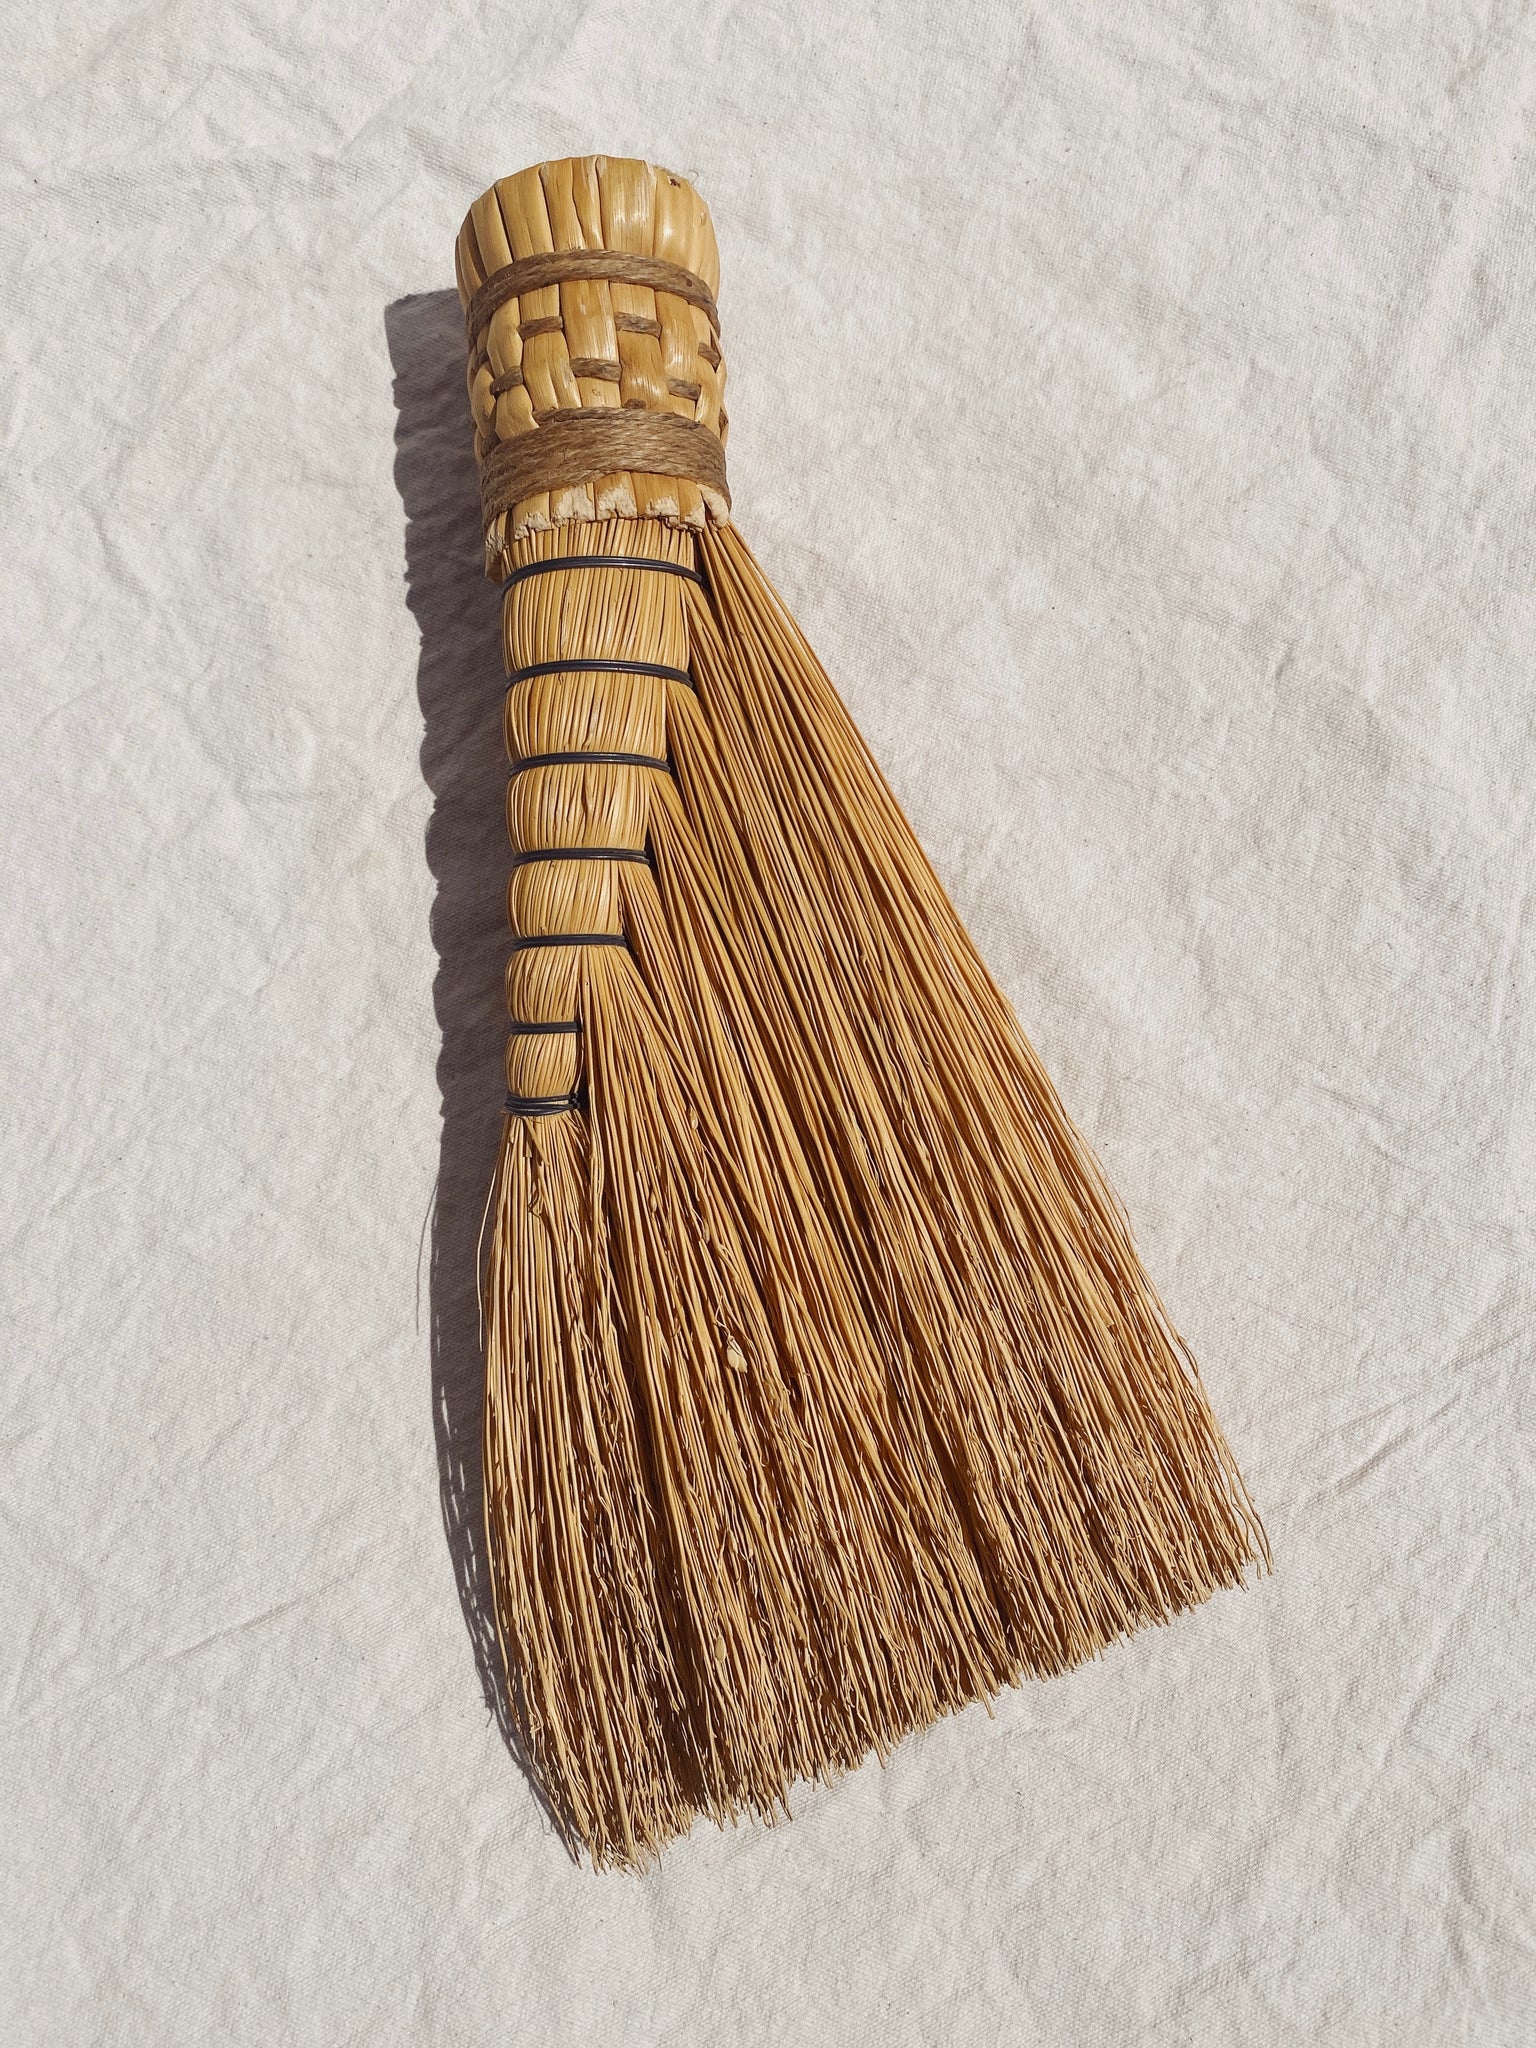 vintage whisk broom